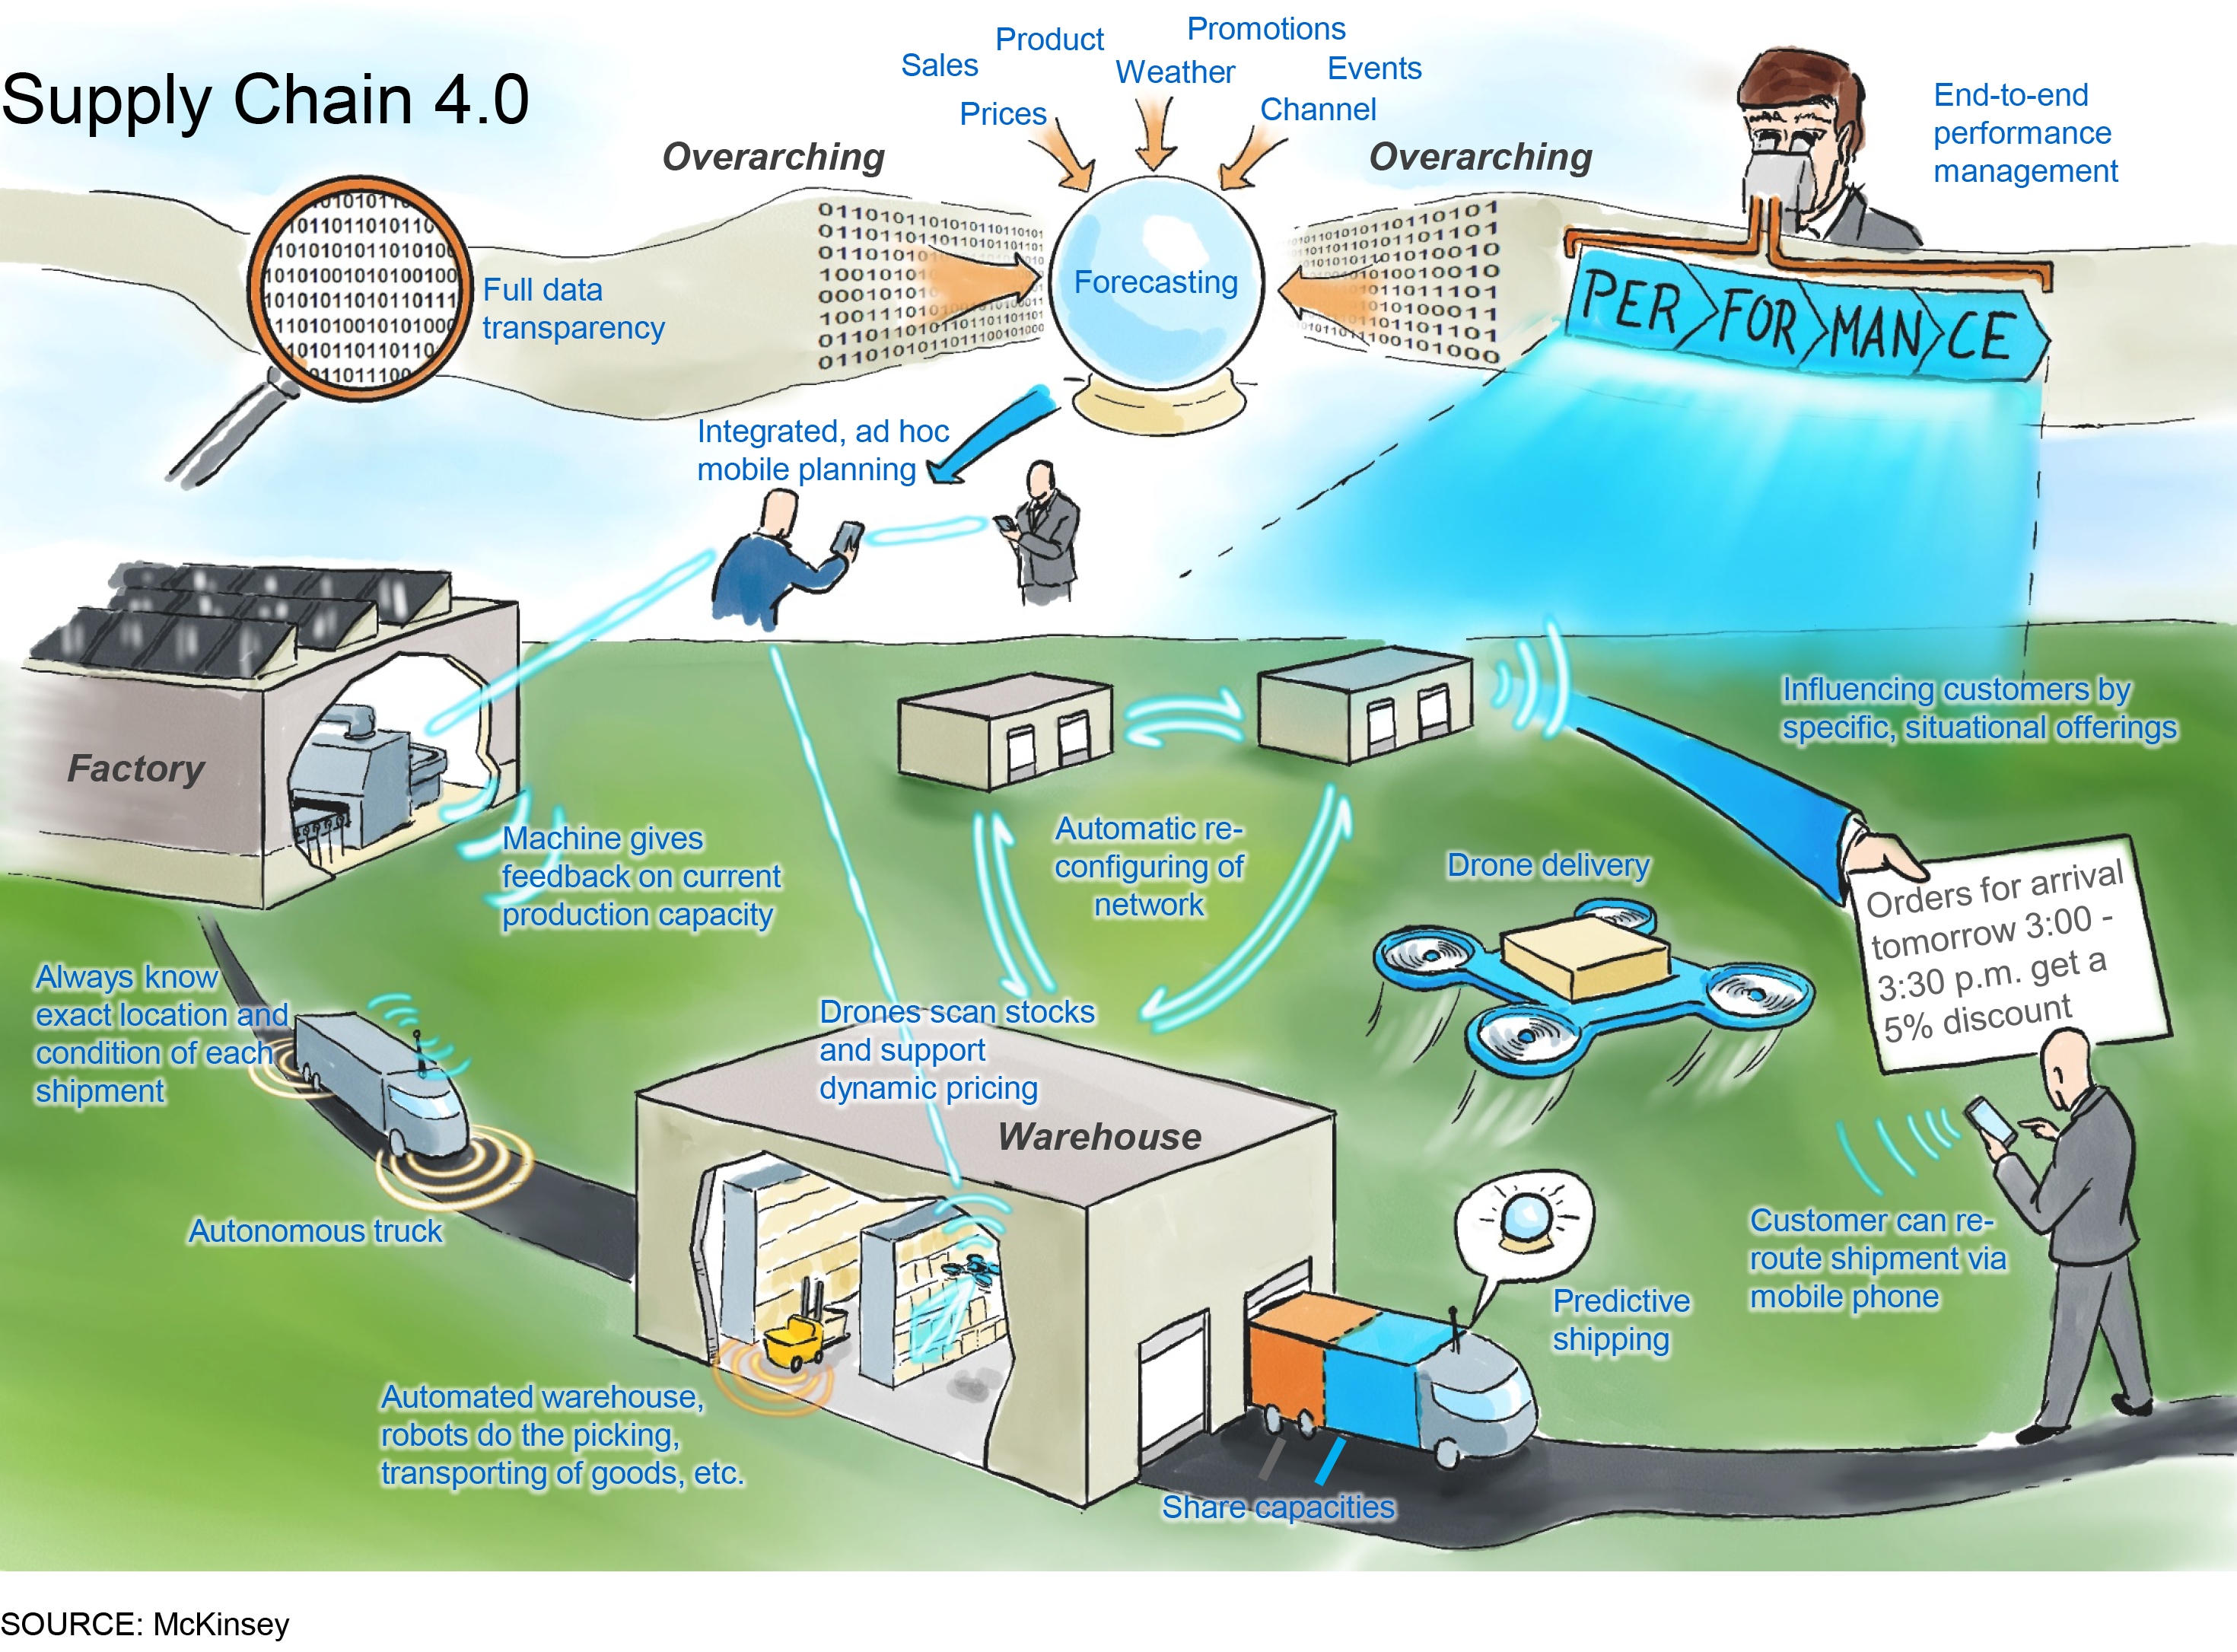 Supply Chain 4.0 – the next-generation digital supply chain | McKinsey